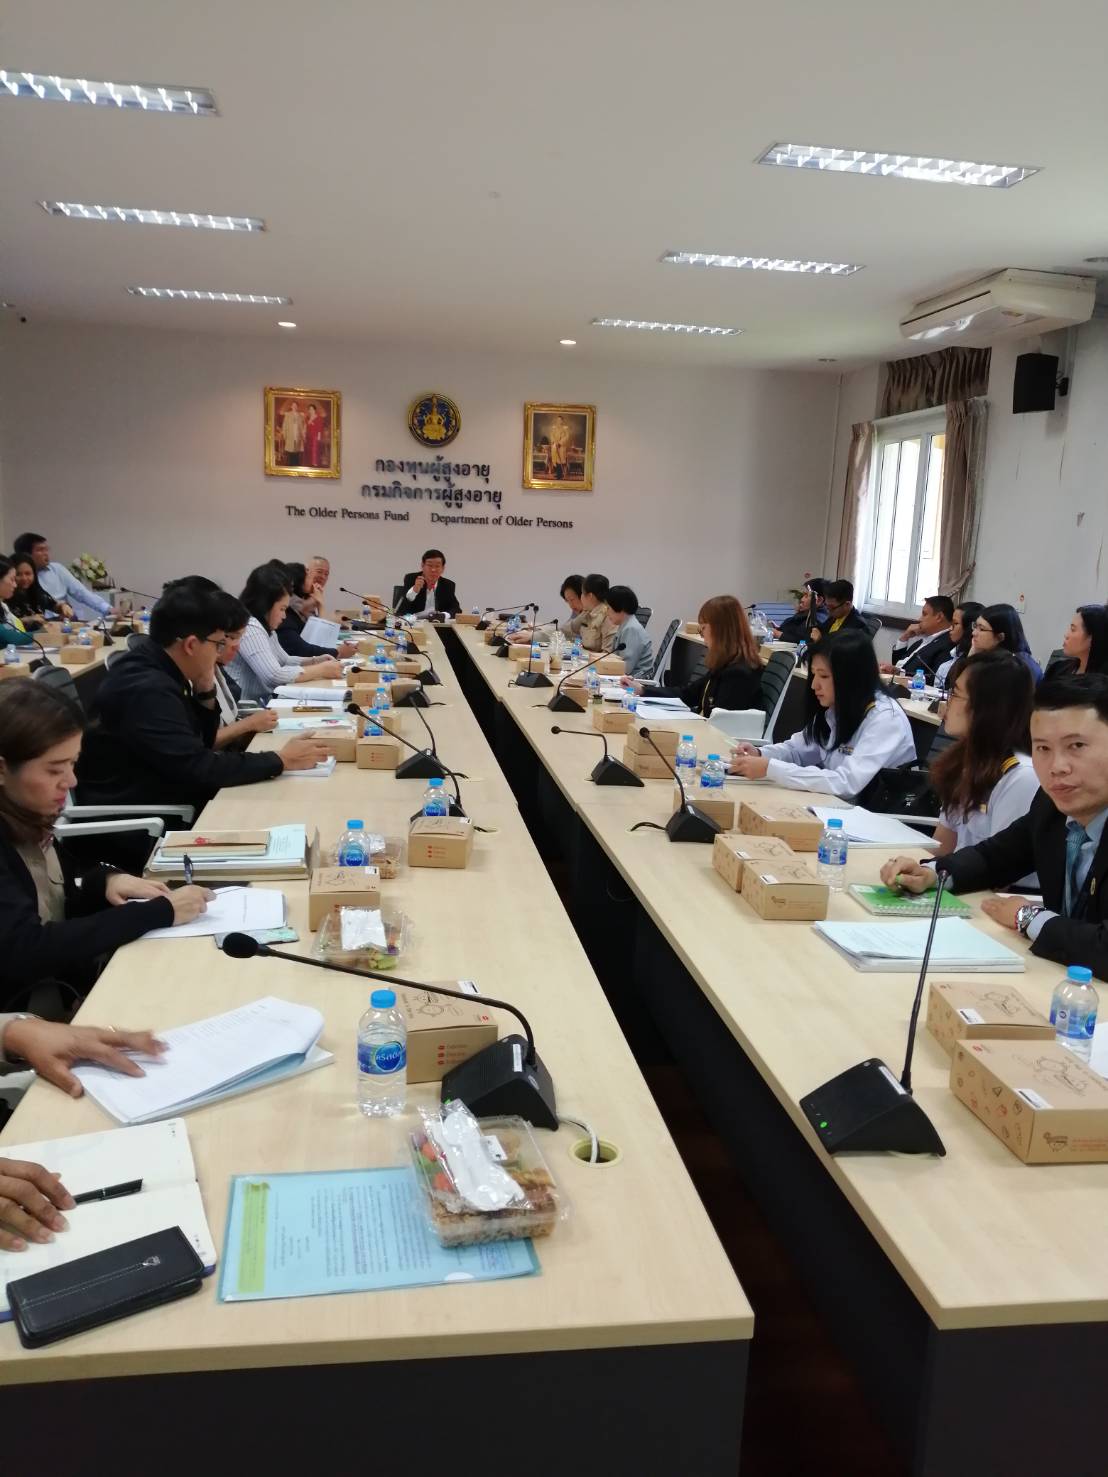 ประชุมเรื่อง การจัดทำร่างรายงานสถานการณ์ผู้สูงอายุไทย ปี2562